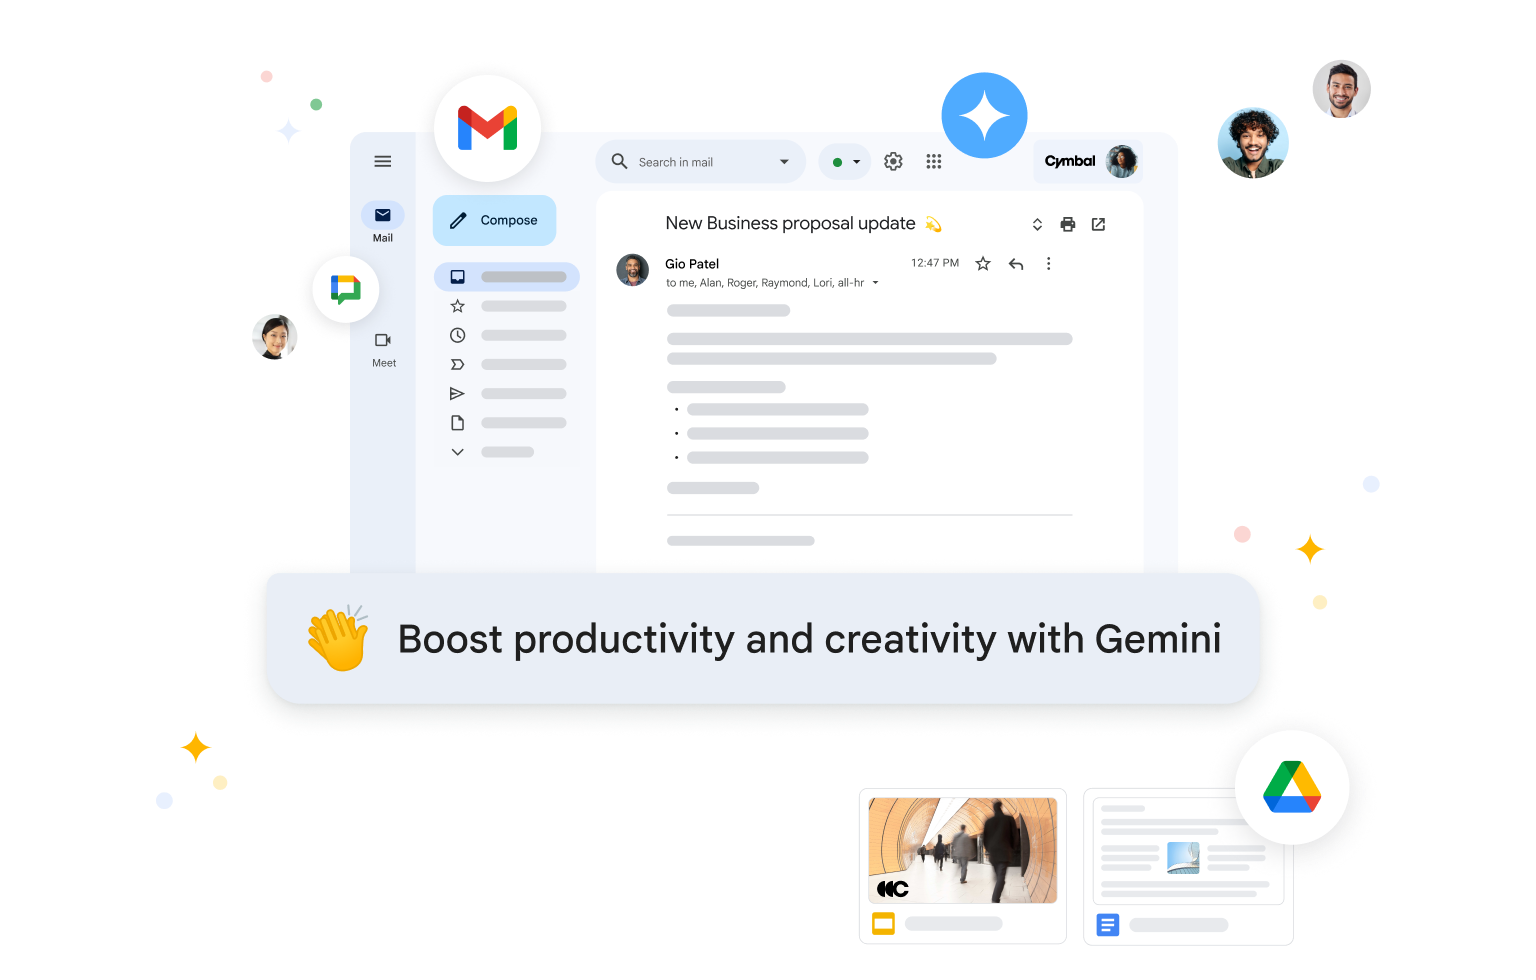 Služba Gemini pro Workspace shrnuje e‑maily a navrhuje odpovědi v Gmailu, čímž pomáhá s produktivitou.